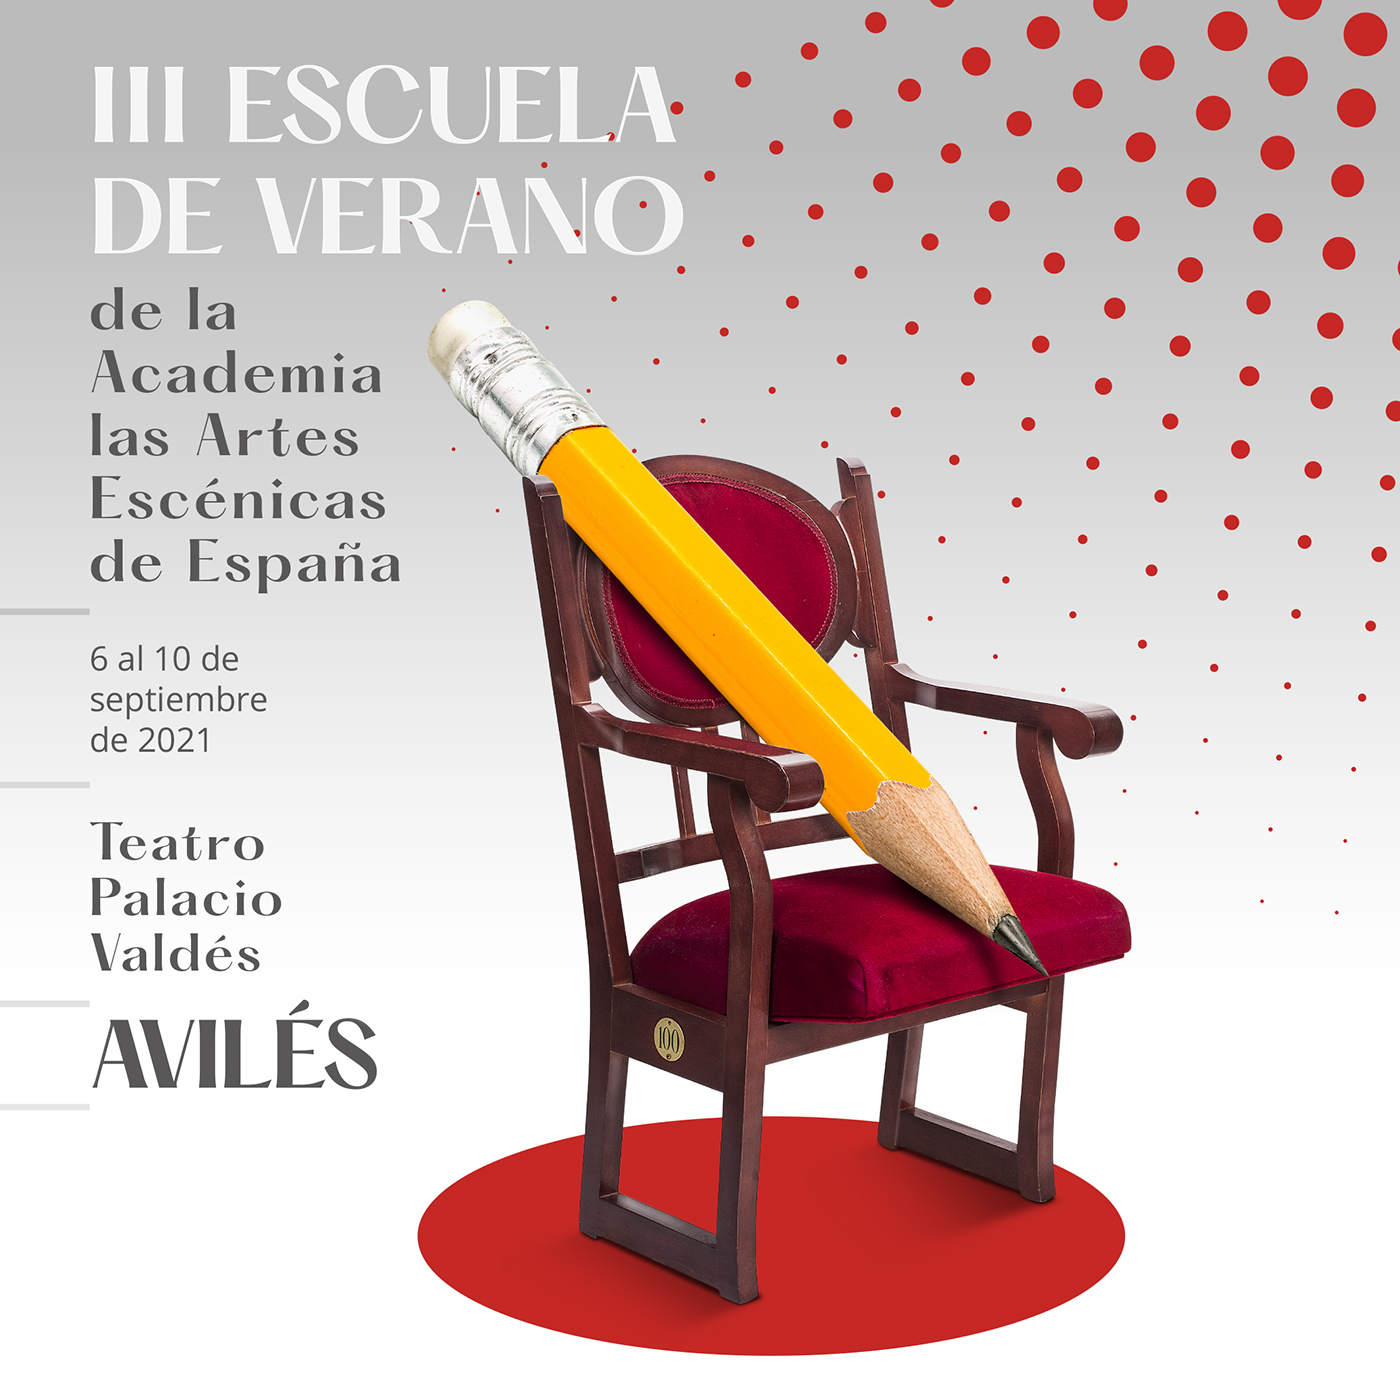 III Escuela de verano de la Academia de las Artes Escénicas de España en Avilés